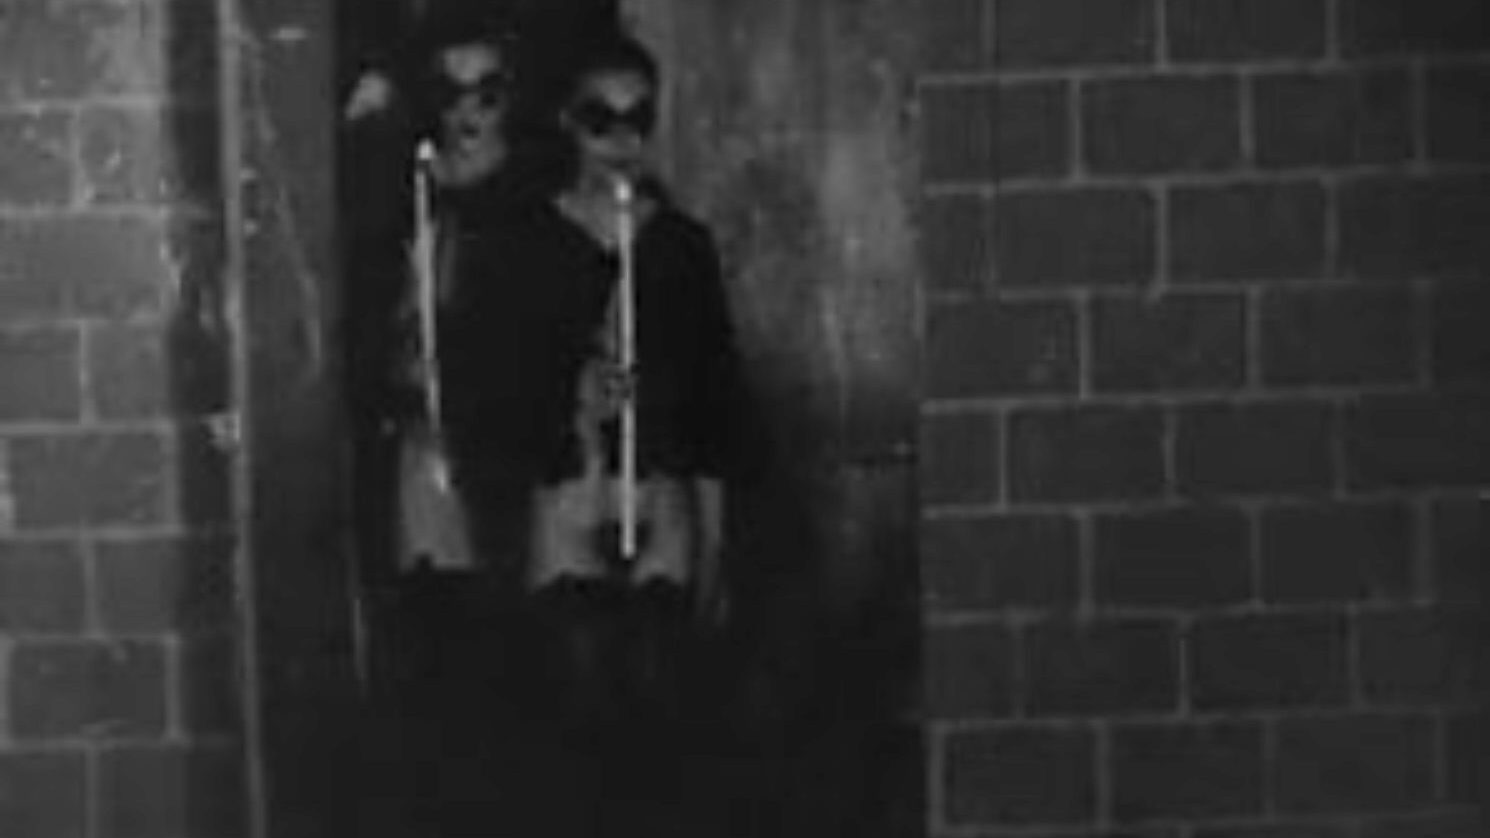 Black Mass messe Noire 1928, וידאו חופשי אורגיה של אמא שאני אוהב לדפוק fb צפה ב Black Messe Noire 1928 וידאו על xhamster, אתר הצינור הכי מעולה לאוהבים עם טונות של אורגיה milf צרפתית בחינם ואמא בוגרת. אני רוצה לזיין סרטוני פורנוגרפיה